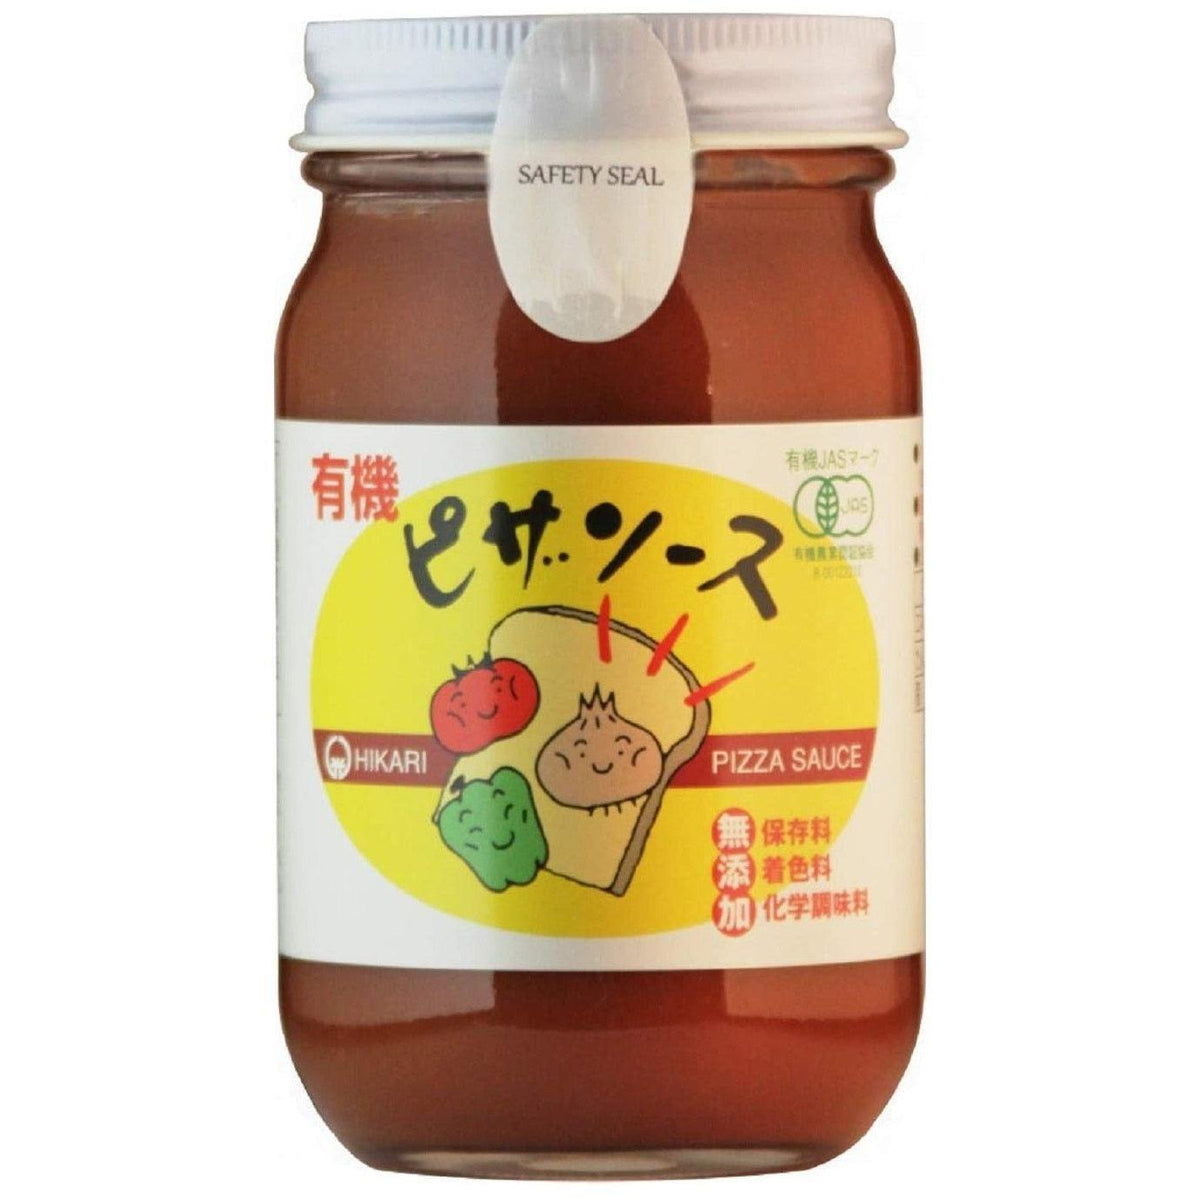 Hikari Japanese Pure Organic Pizza Sauce 225g – Japanese Taste